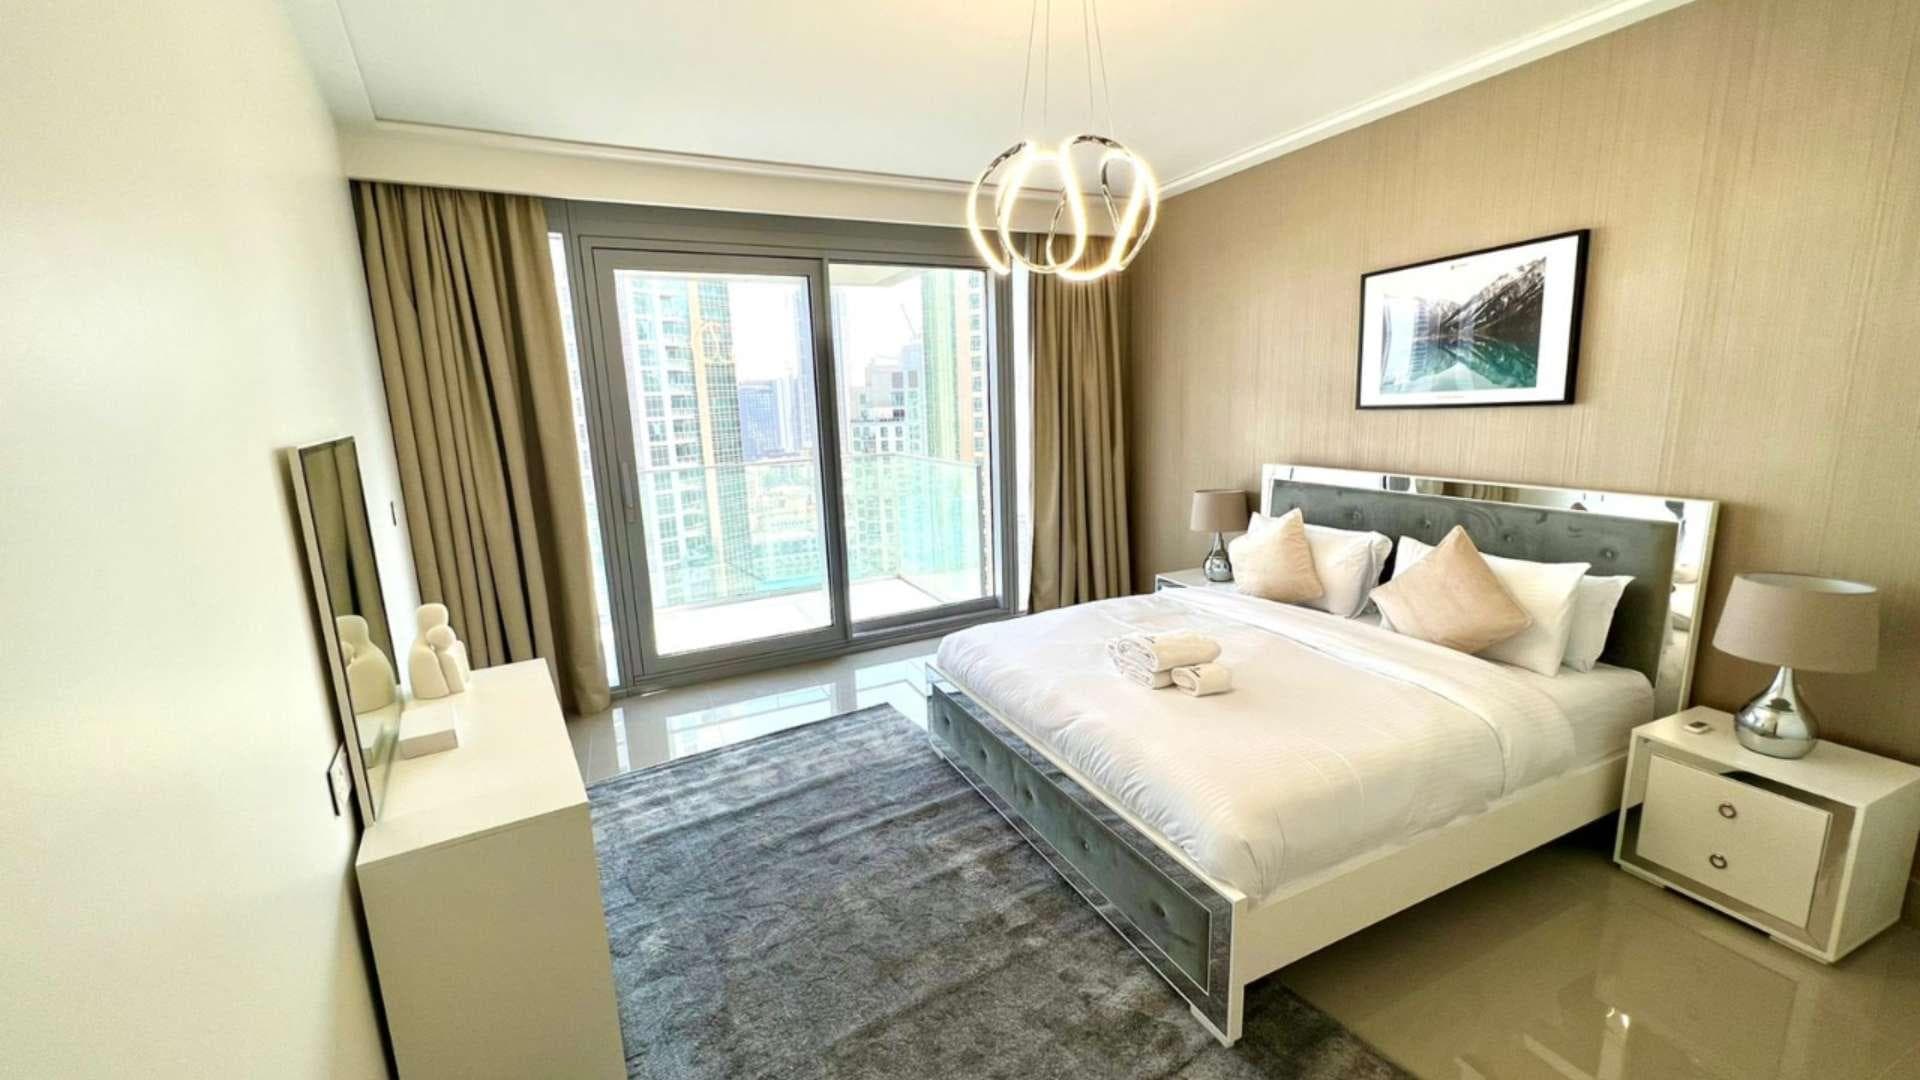 3 Bedroom Apartment For Rent Opera District Lp21077 2f7b93a02bda6c00.jpg